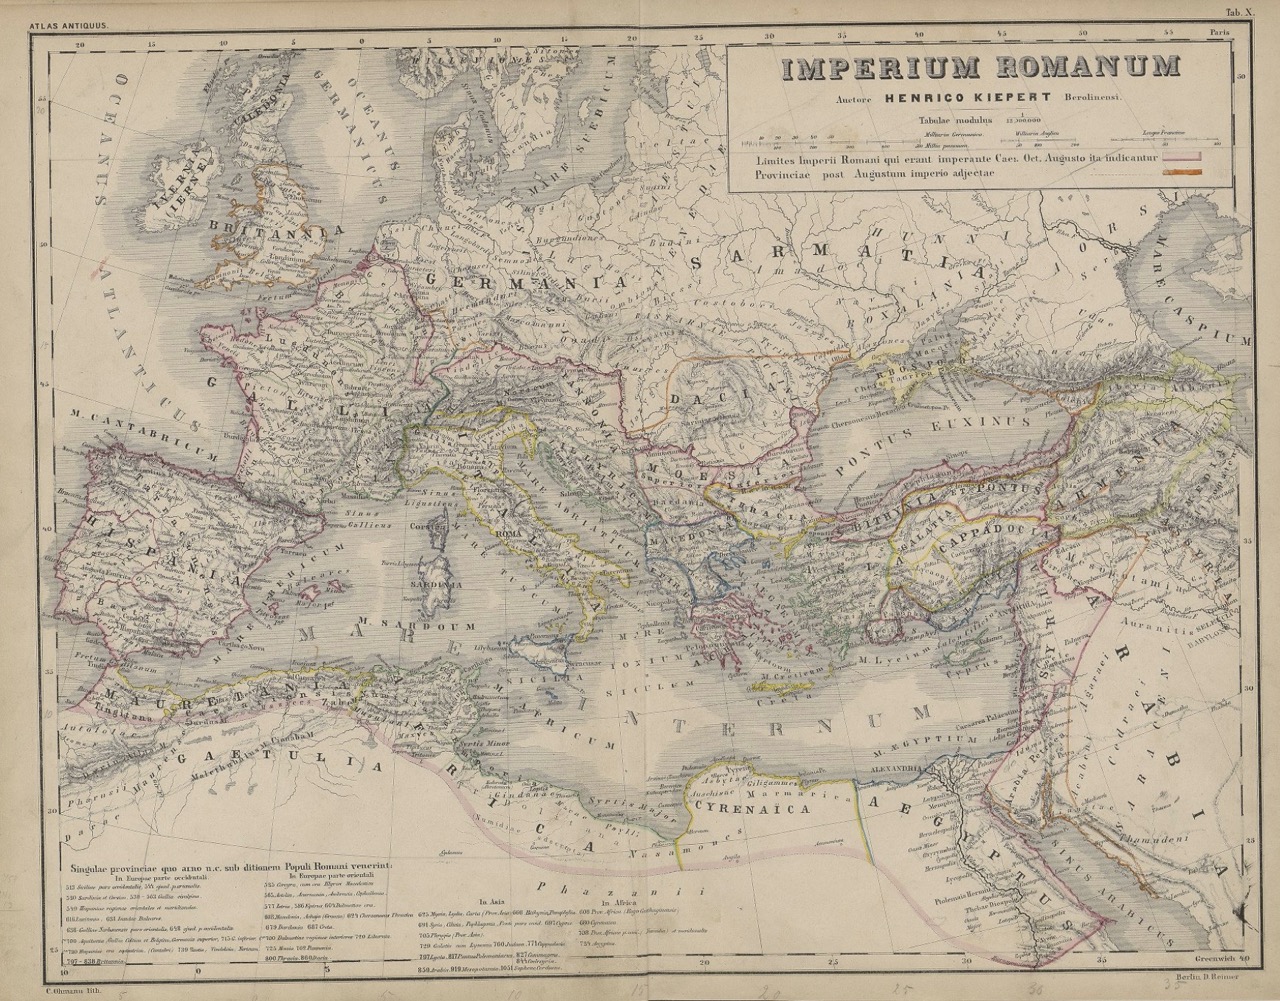 Kiepert: Atlas Antiquus 1863, "Imperium Romanum"